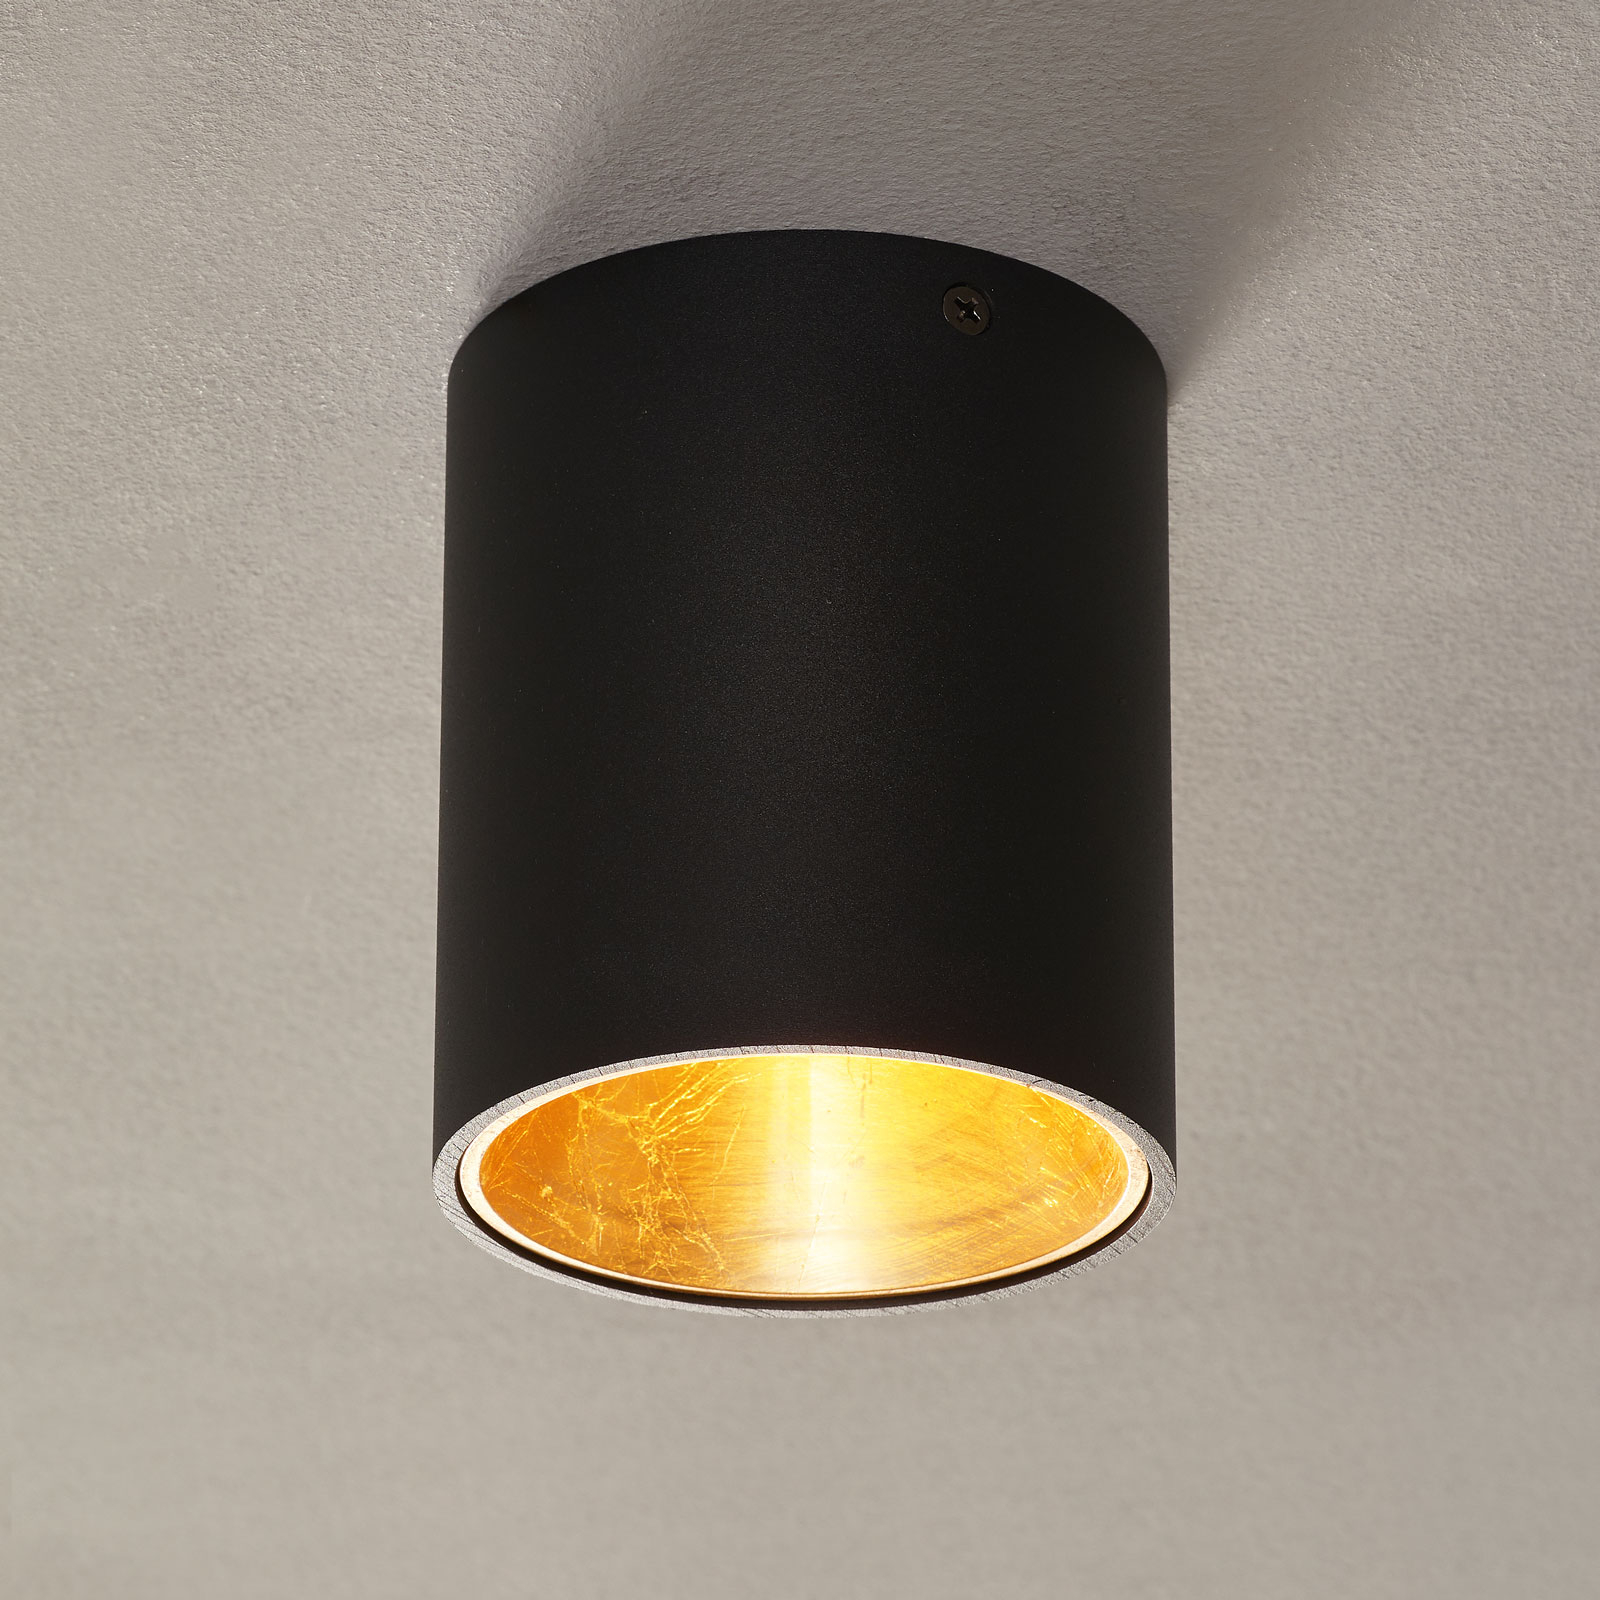 LED-Deckenlampe Polasso rund, schwarz-gold